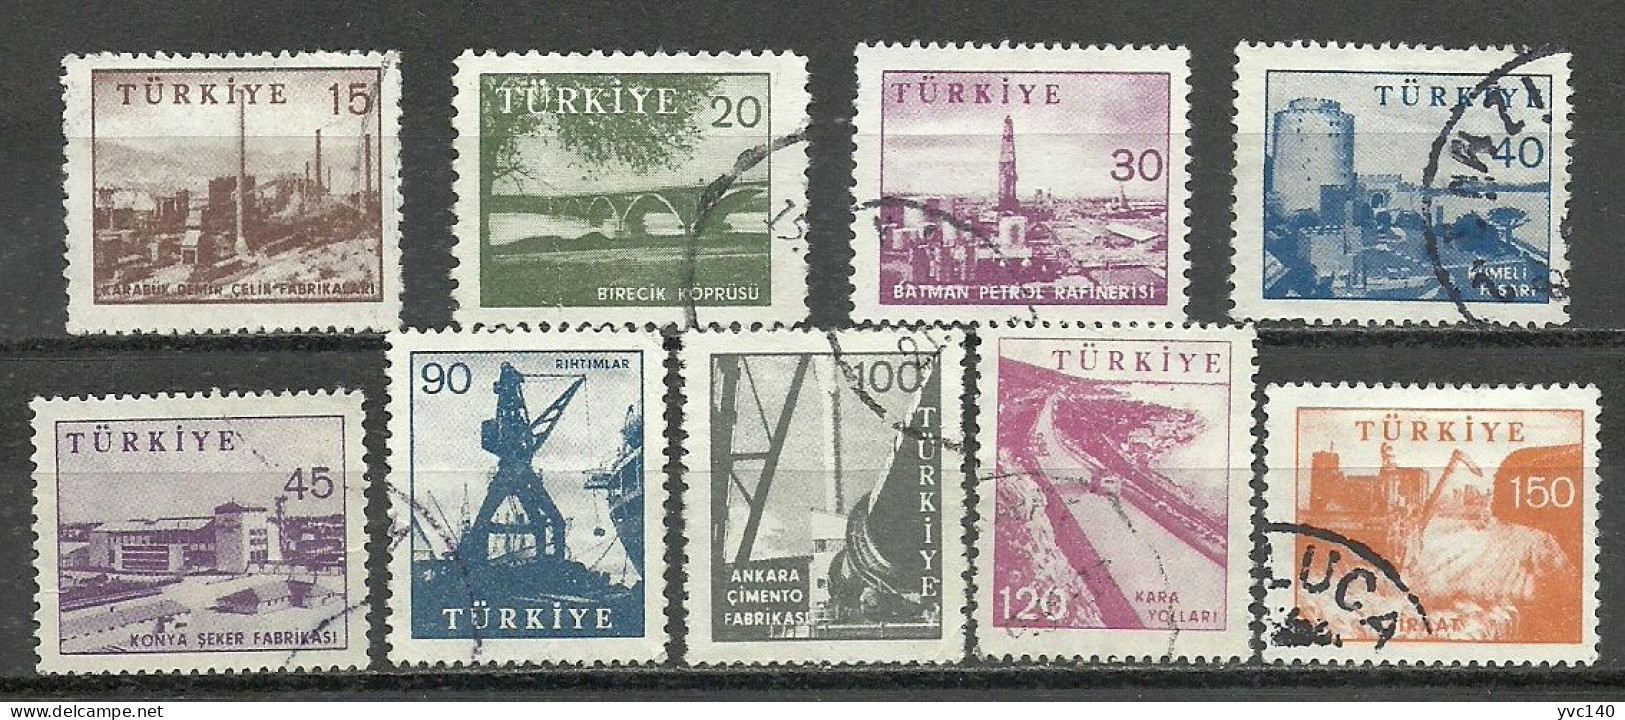 Turkey; 1959 Pictorial Postage Stamps (Complete Set) - Gebraucht